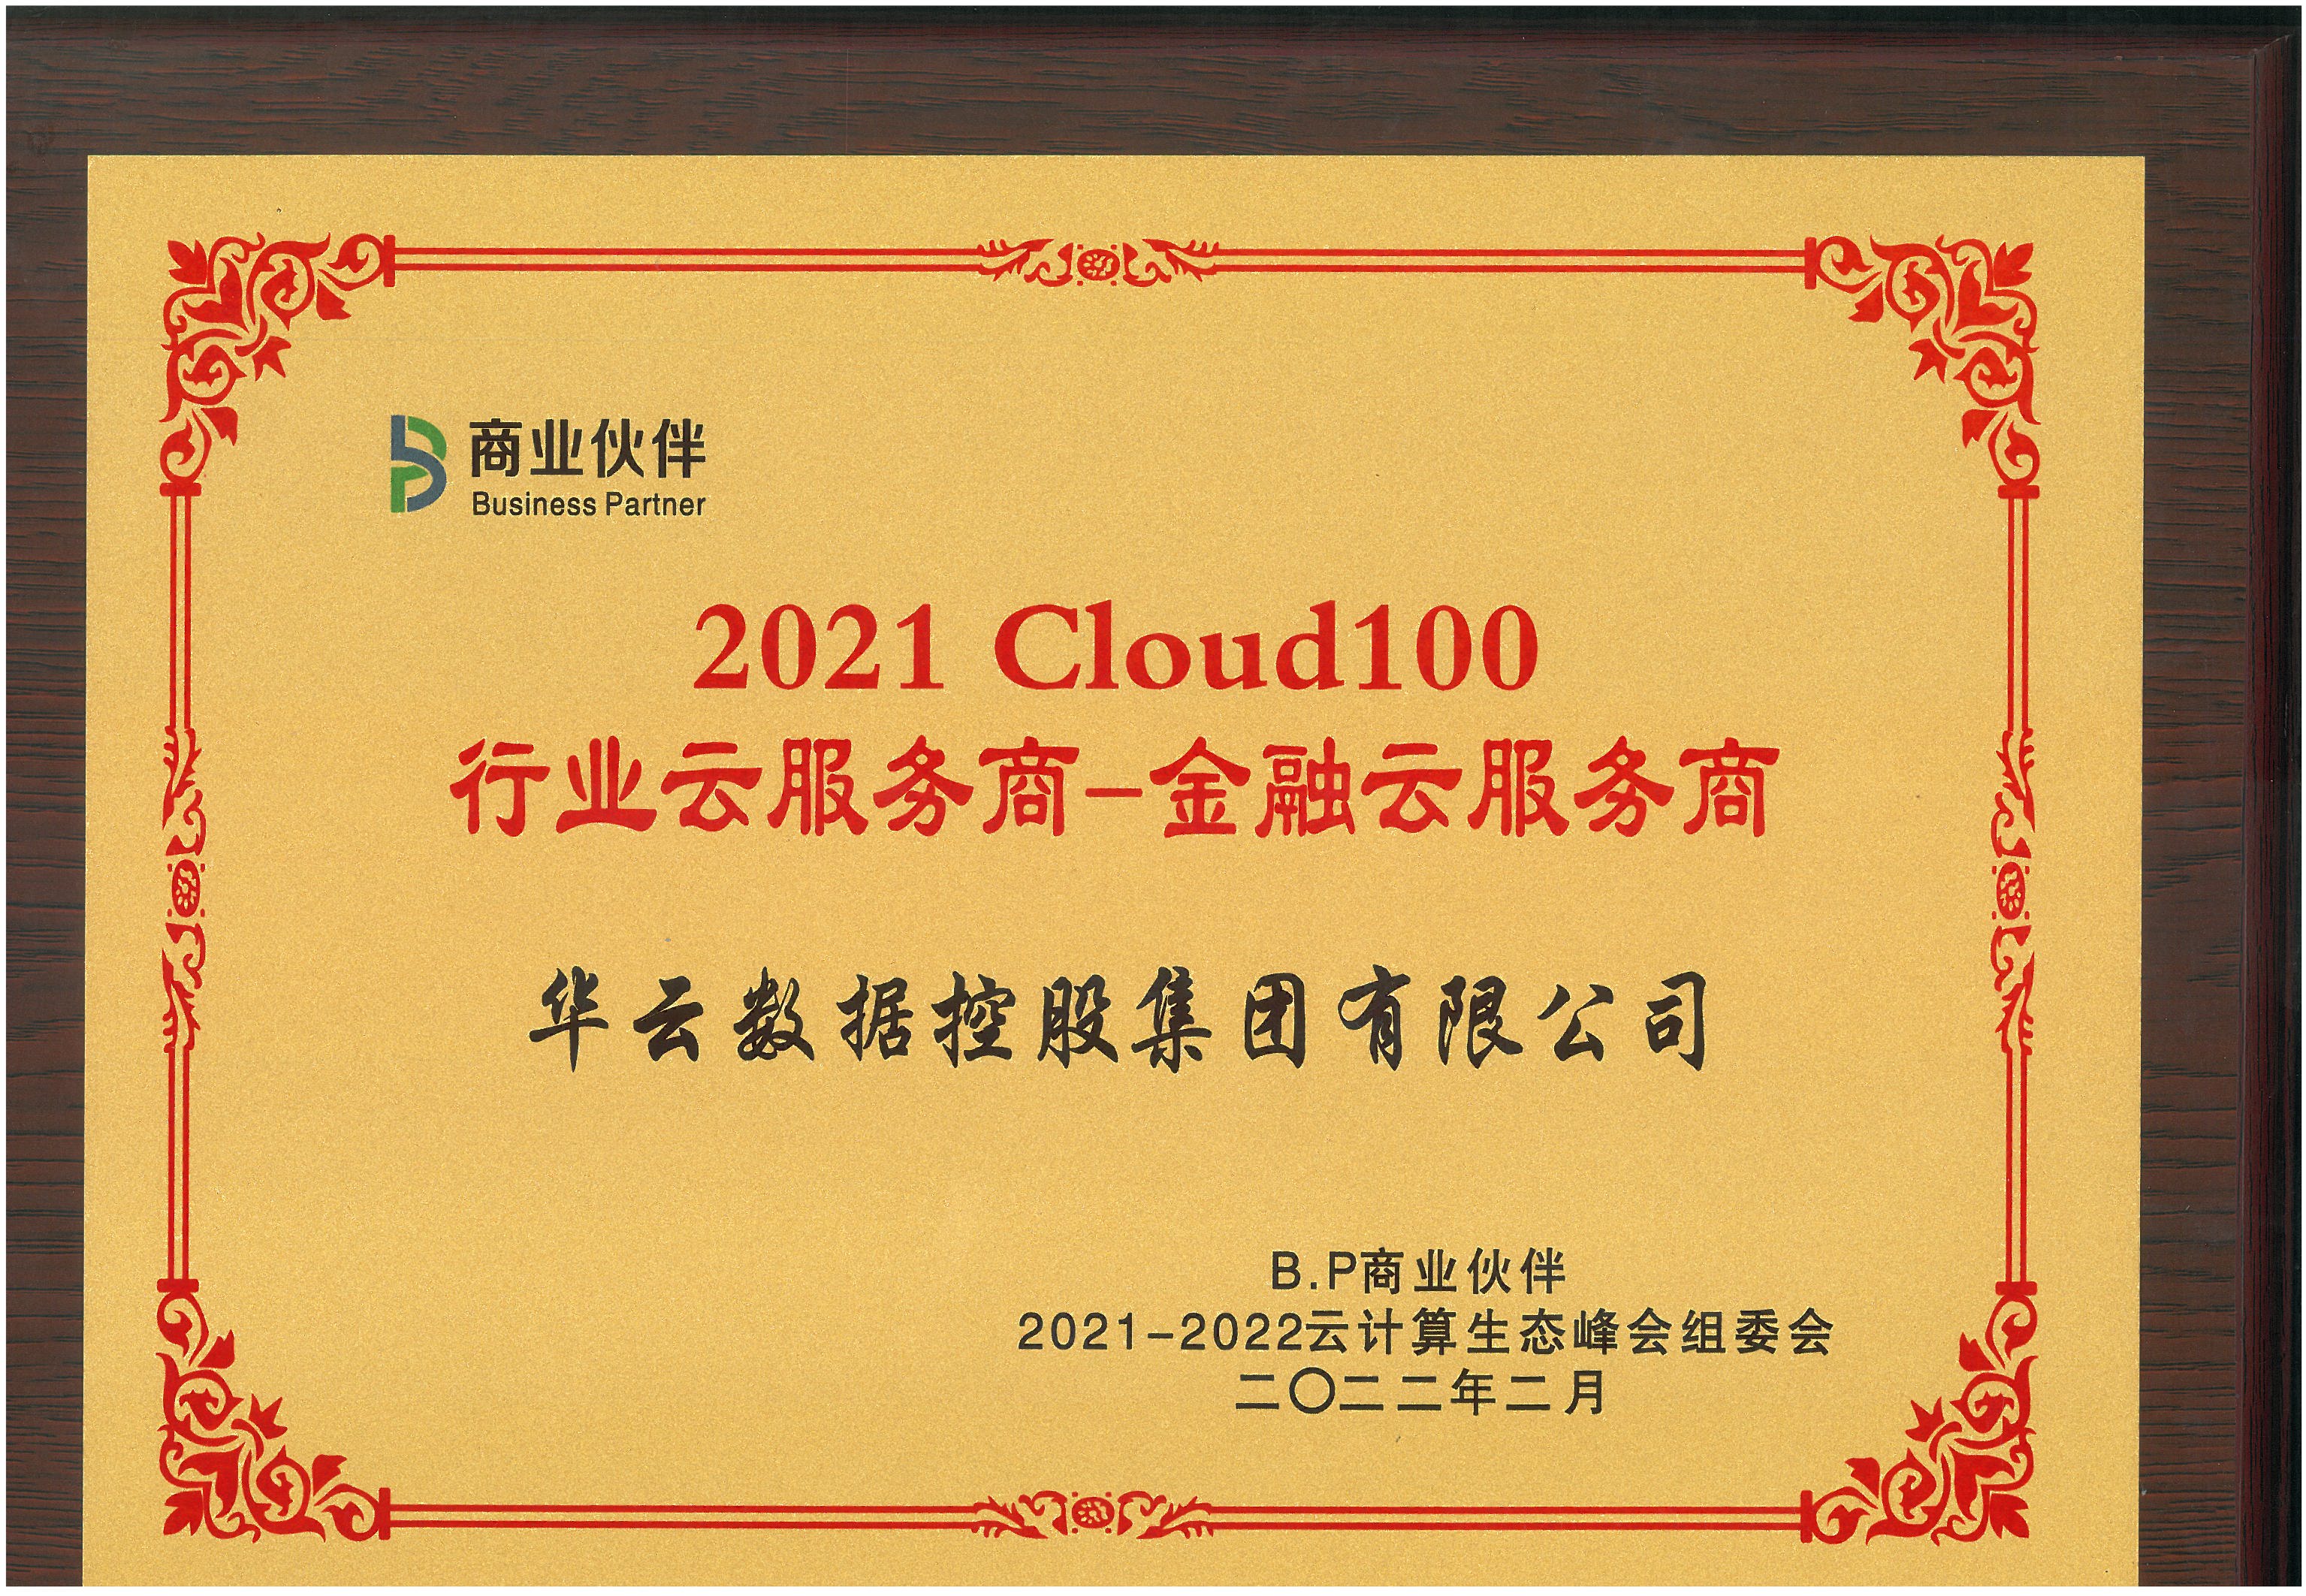 2021Cloud100行业云服务商-金融云服务商